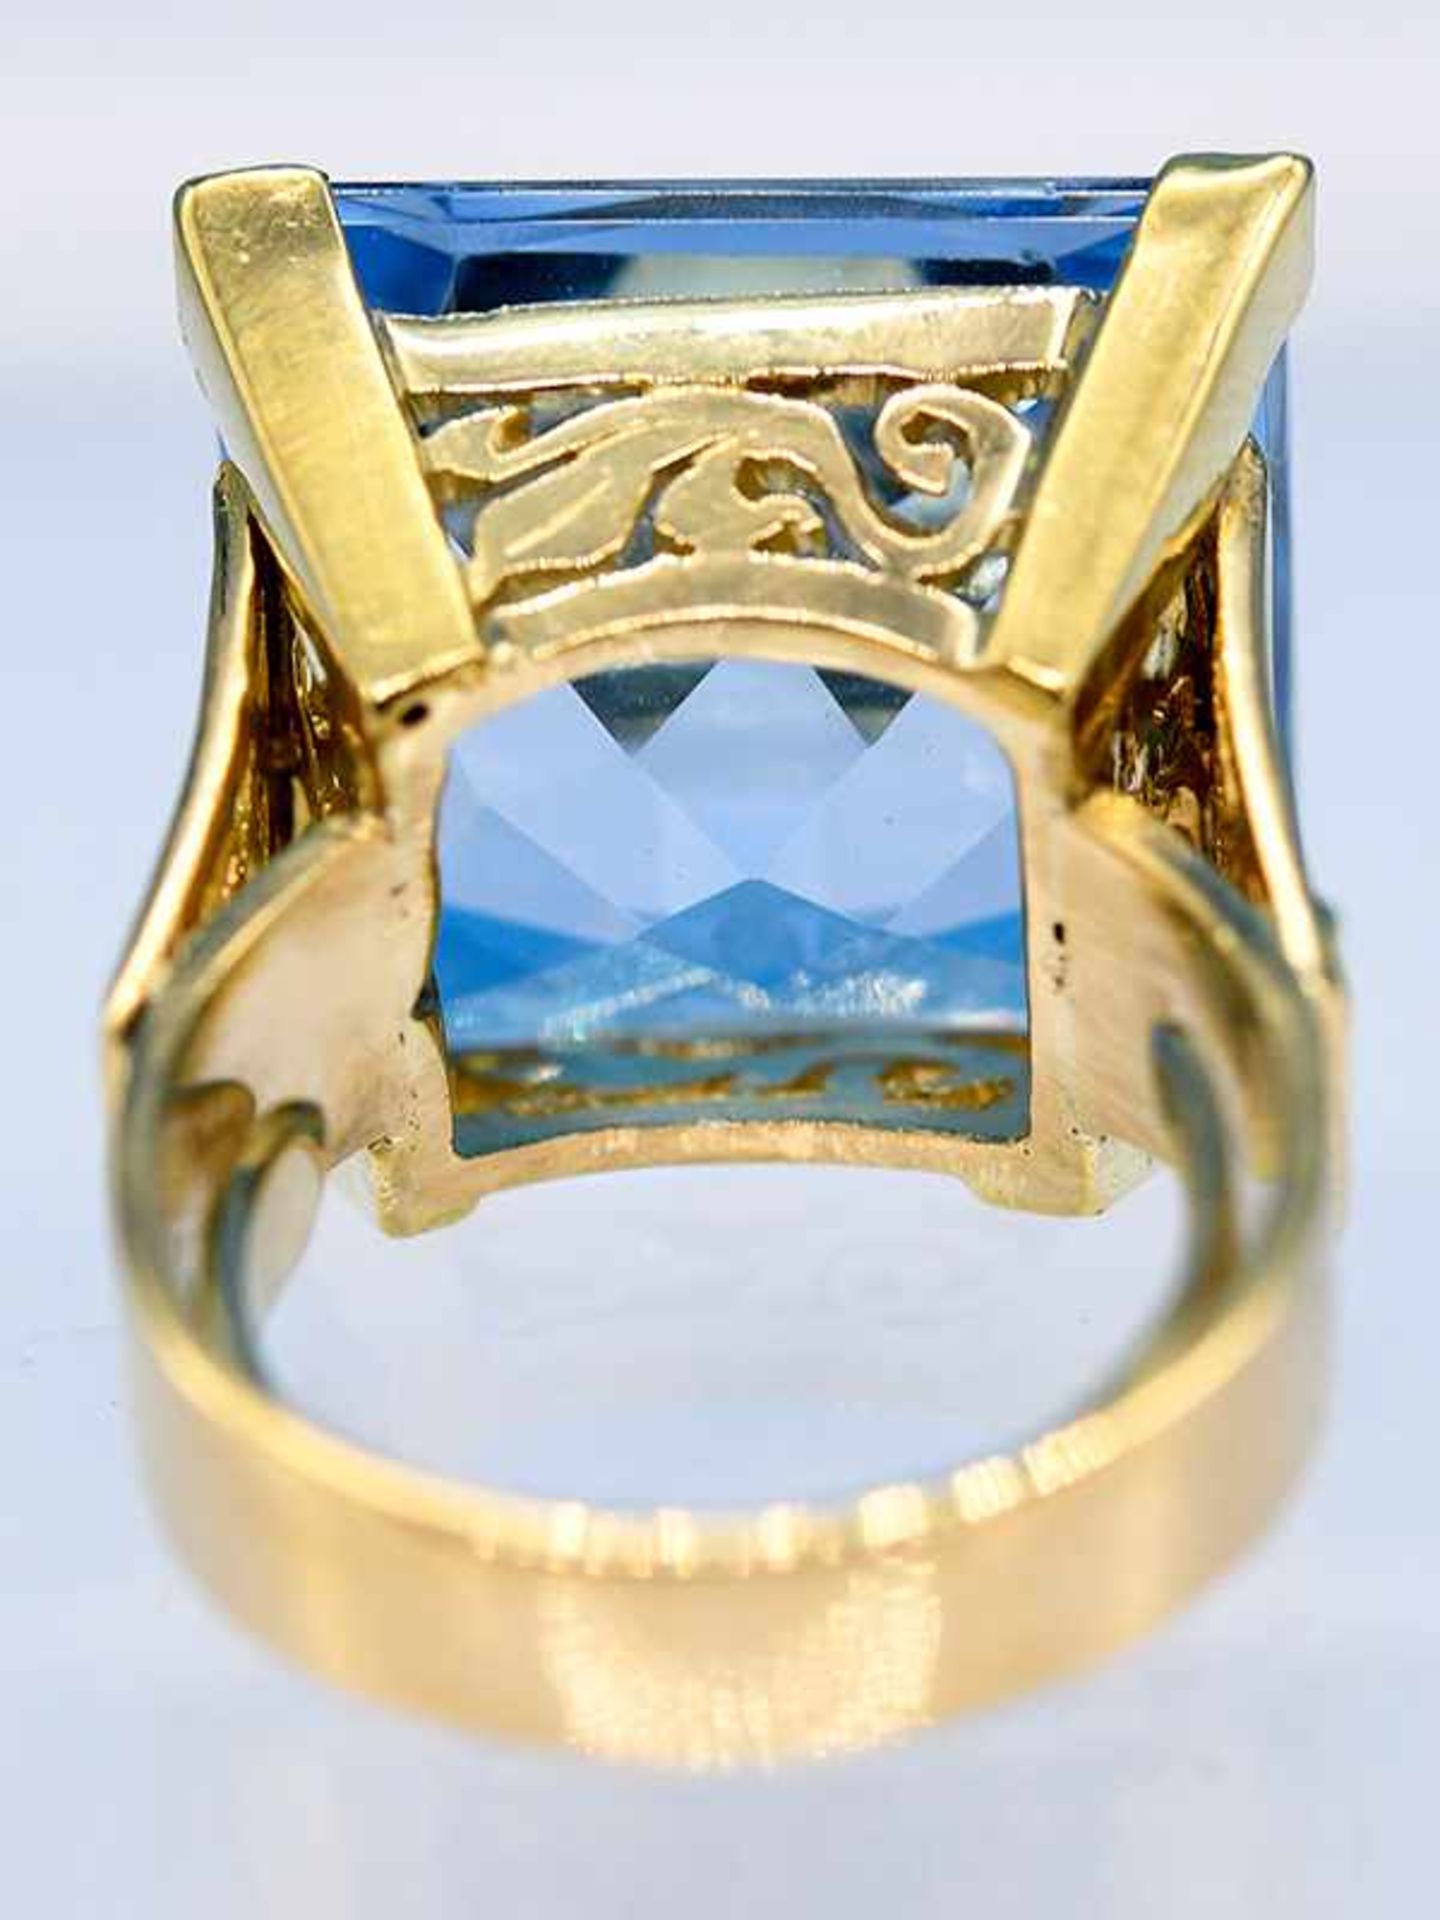 Massiver Ring mit Topas, Goldschmiedearbeit, 20. Jh. 585/- Gelbgold. Gesamtgewicht ca. 17,1 g. - Bild 5 aus 5